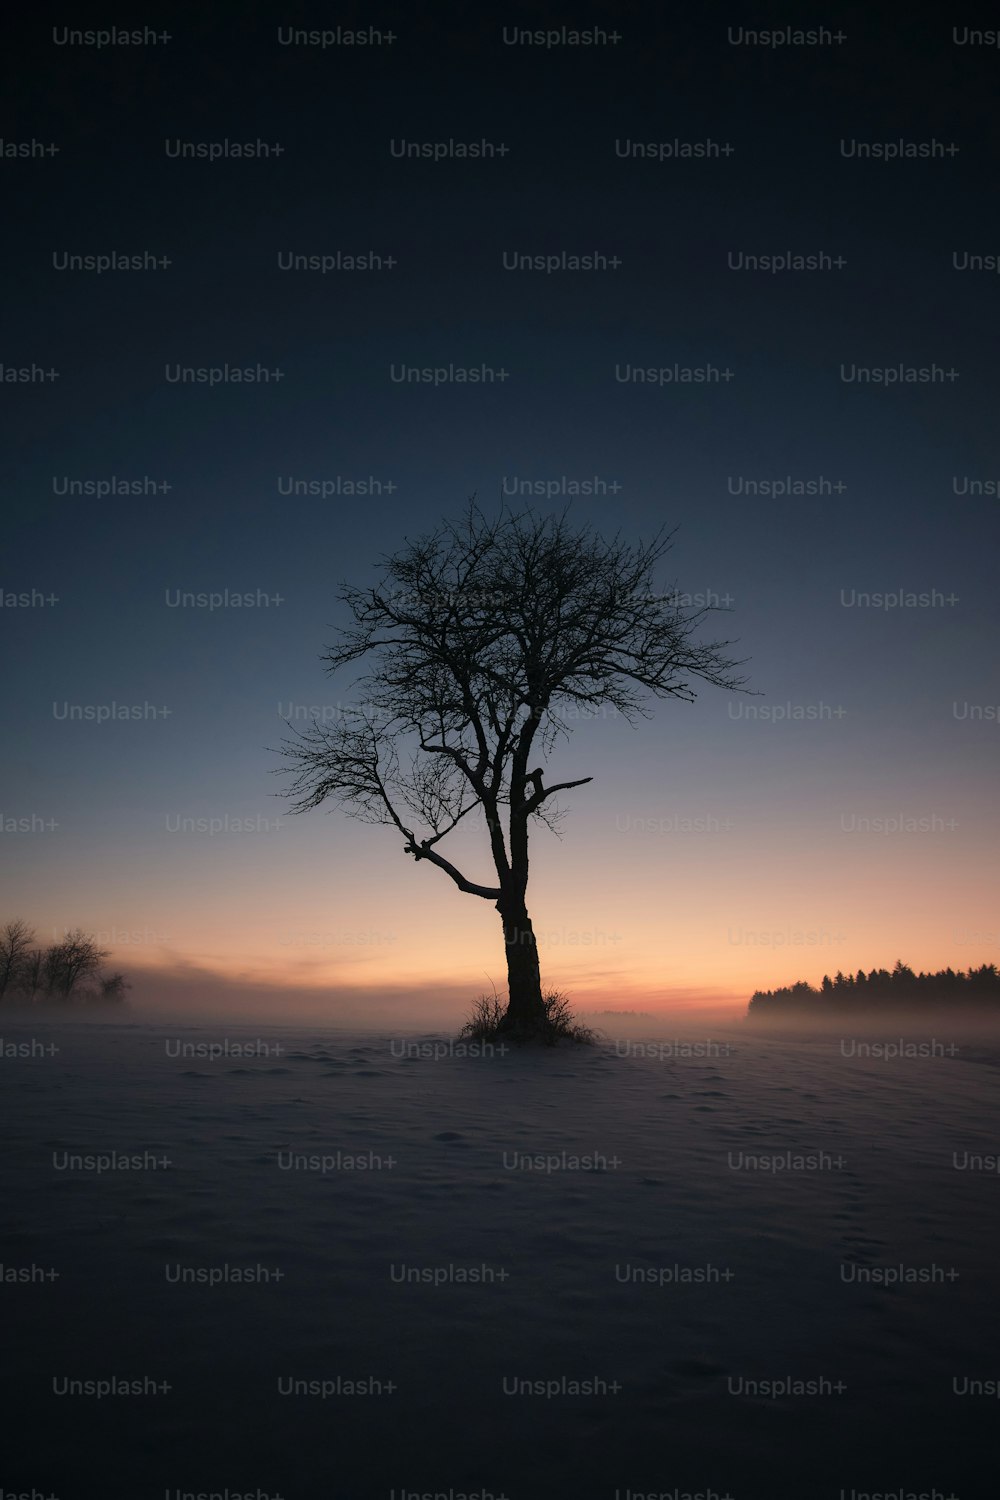 Ein einsamer Baum inmitten eines verschneiten Feldes